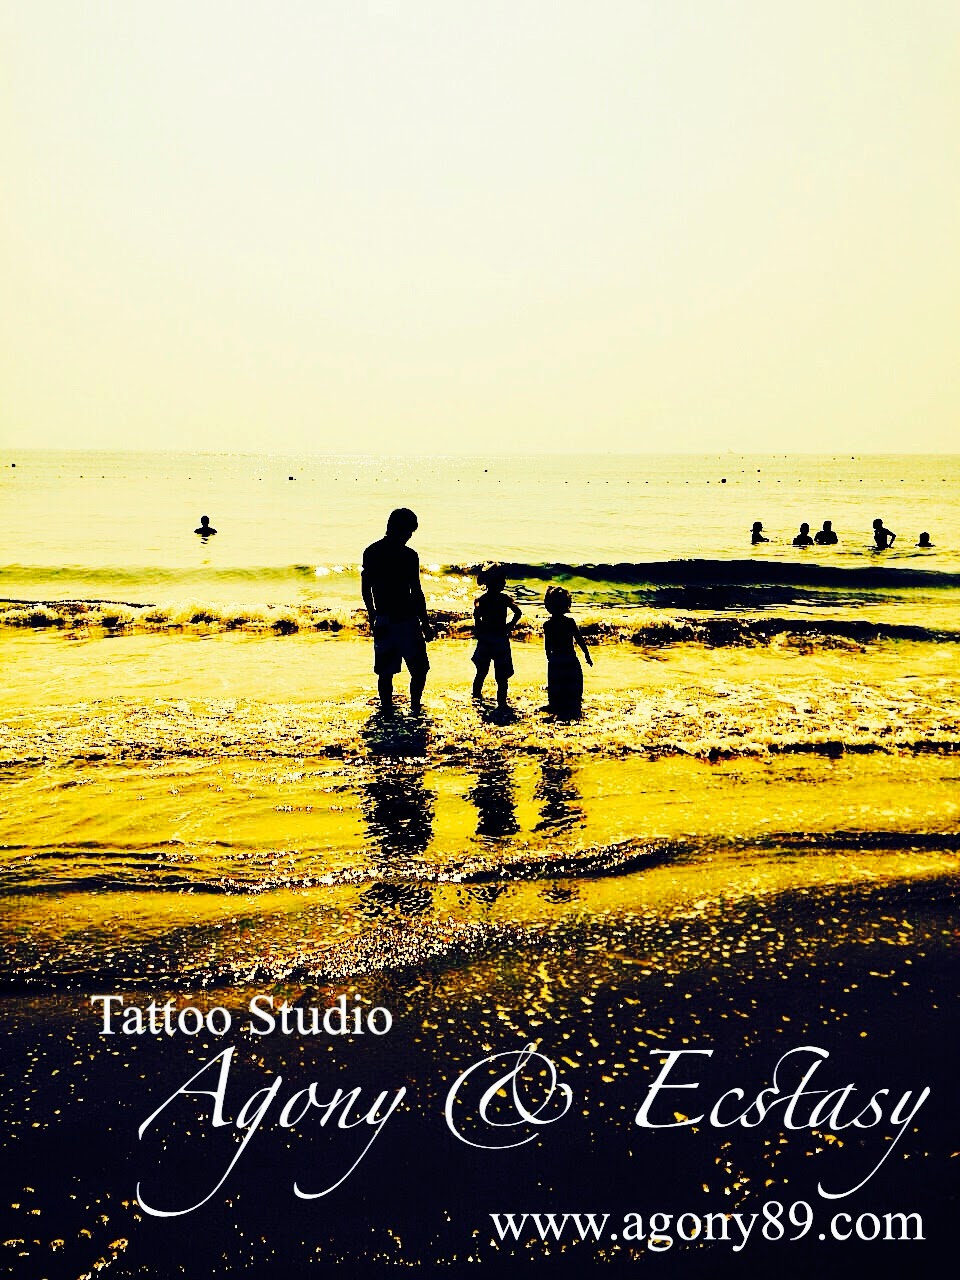 刺青 tattoo 画像 タトゥーデザイン 刺青デザイン タトゥースタジオ画像 刺青 千葉県 タトゥー 千葉 刺青 千葉県 タトゥースタジオ 画像